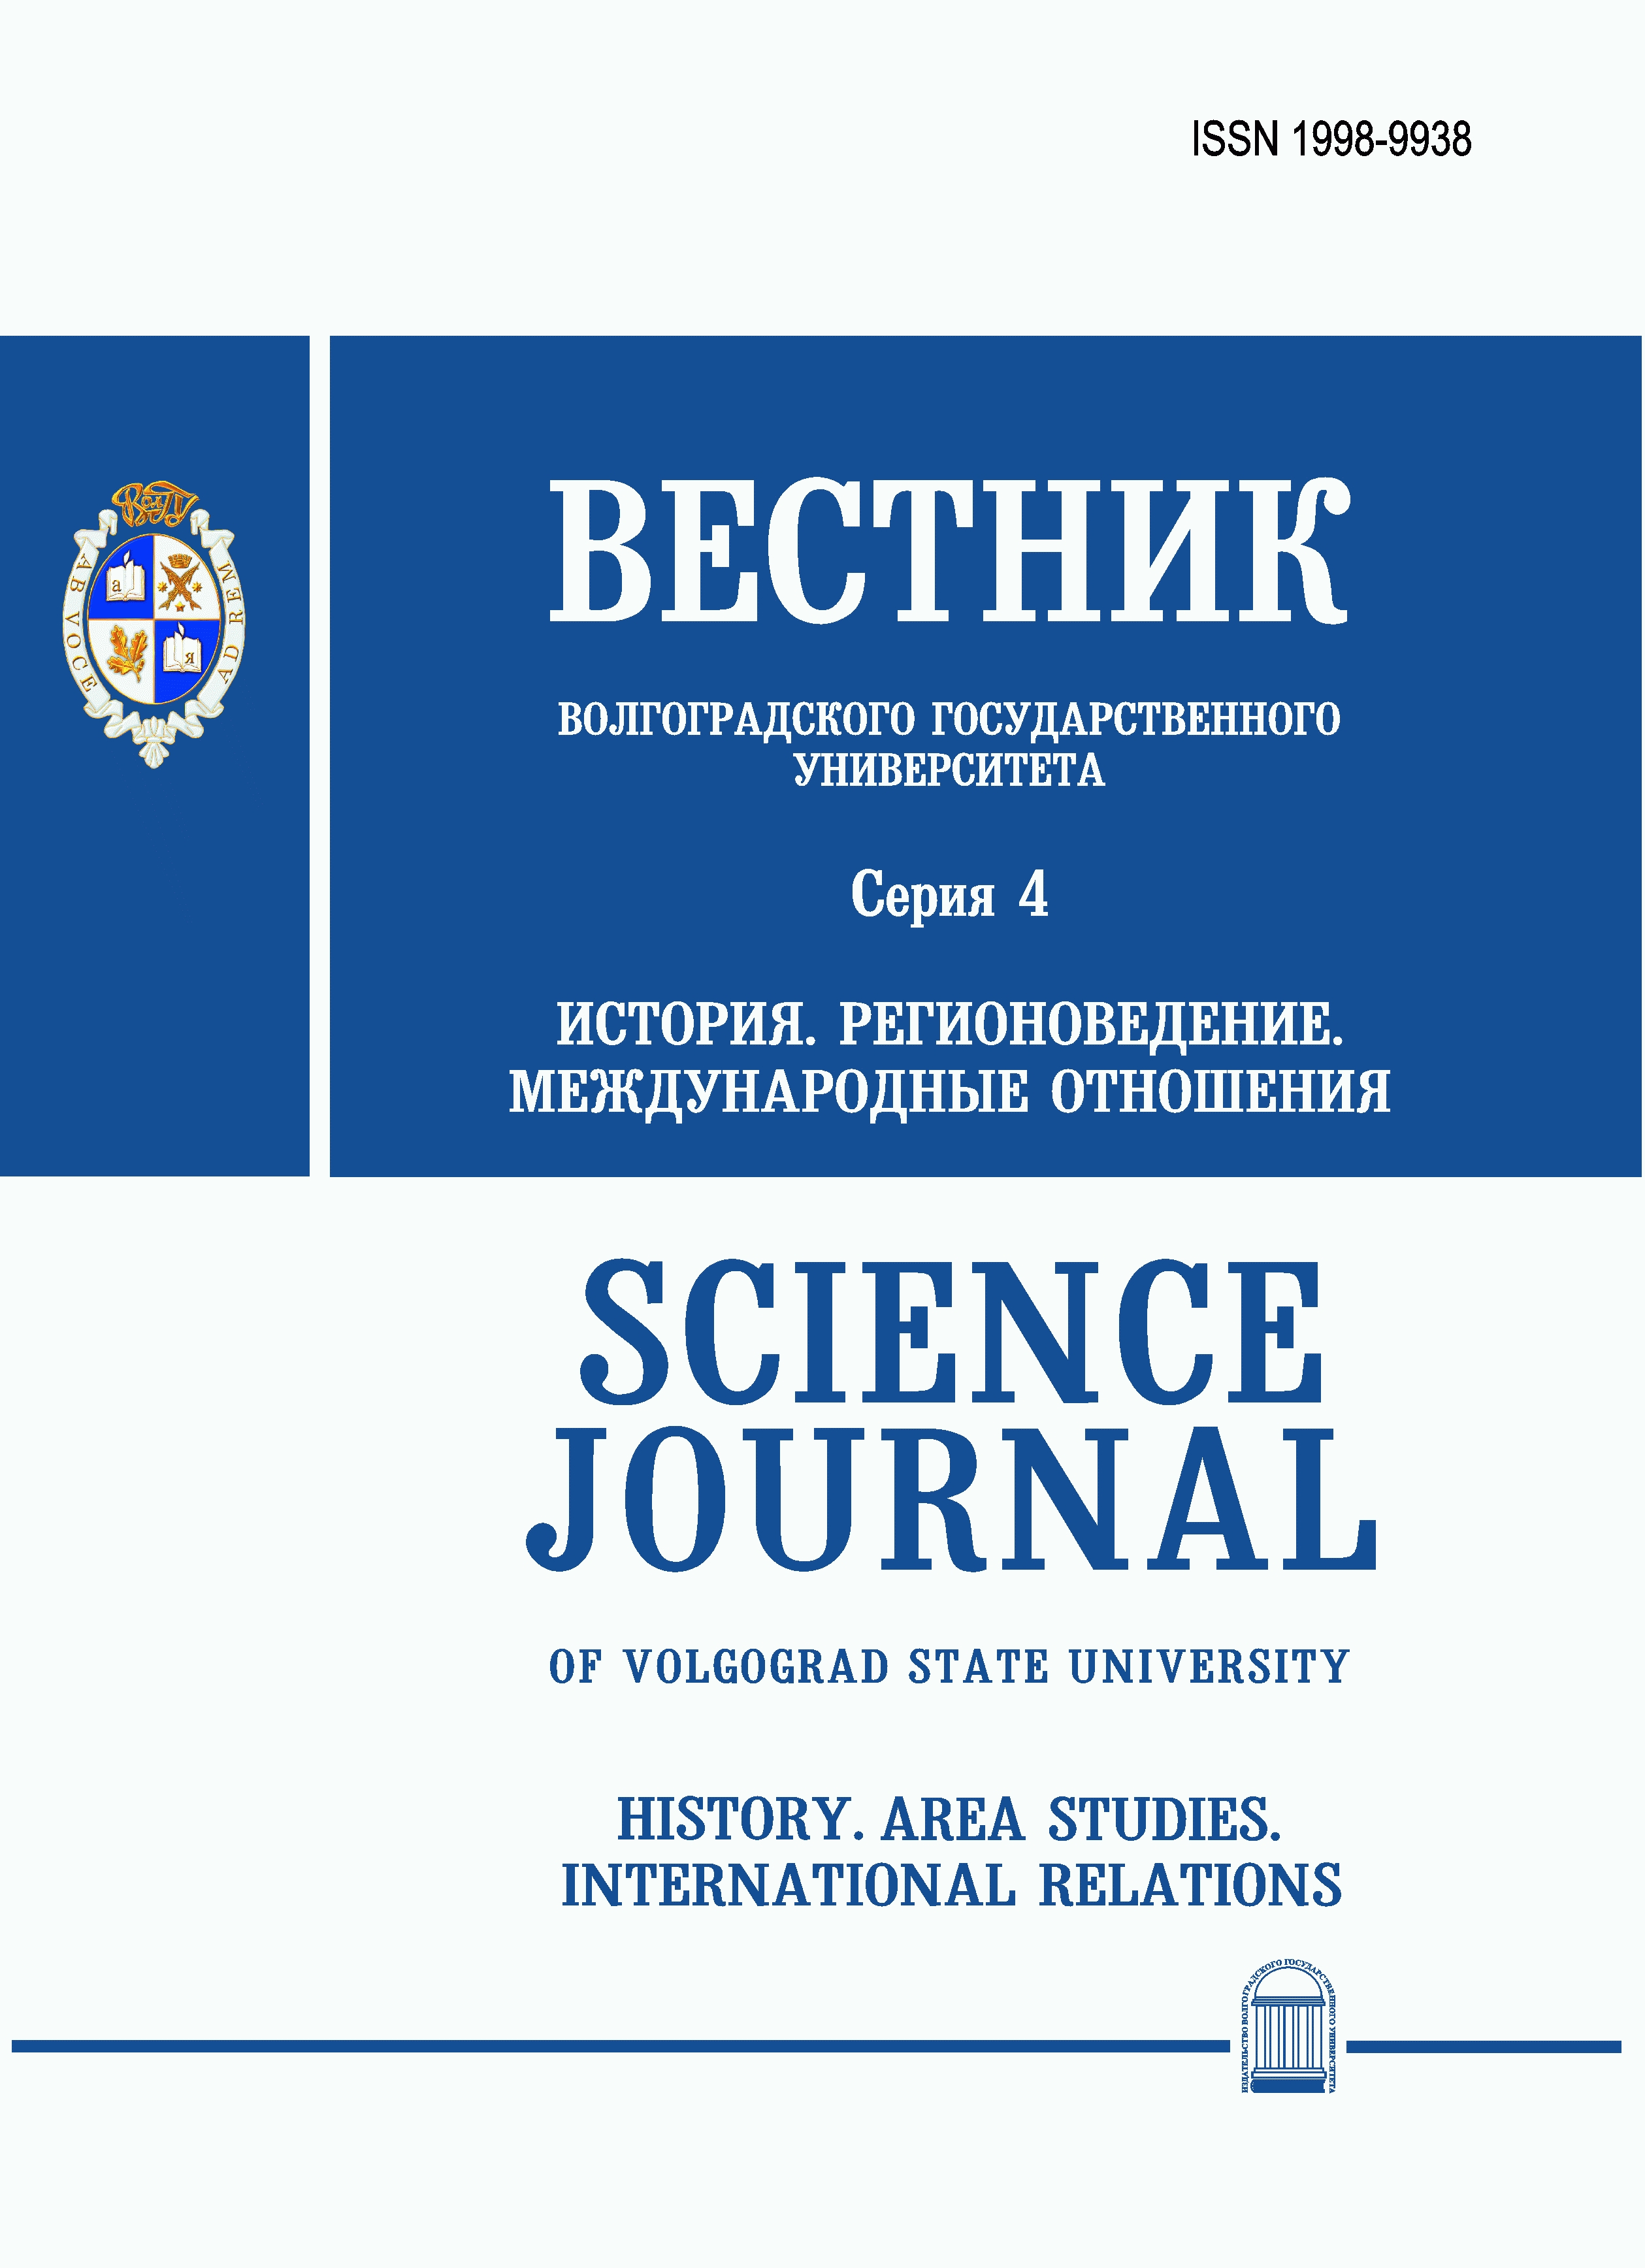 Journals In Russian 67